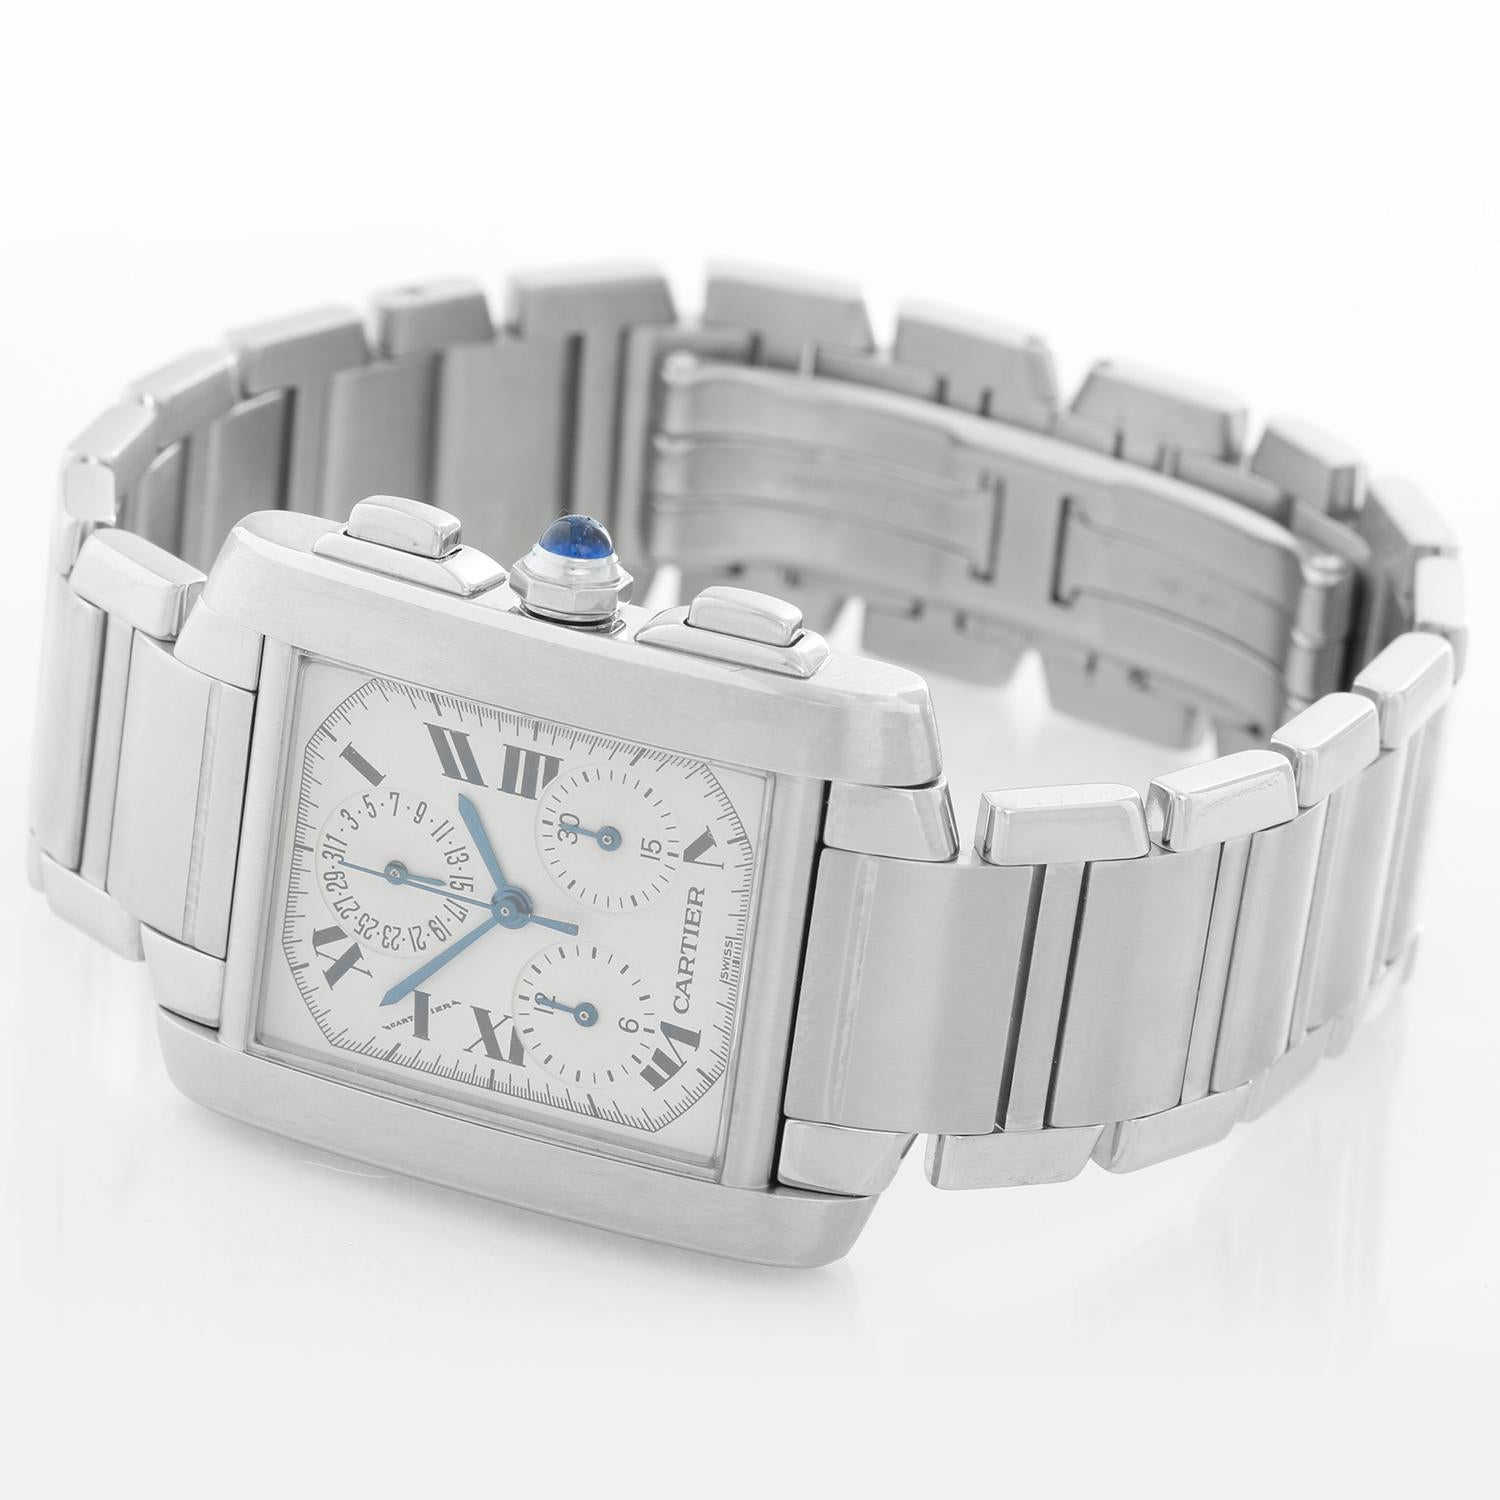 Cartier Tank Francaise Chronograph Men's Watch W51001Q3 1